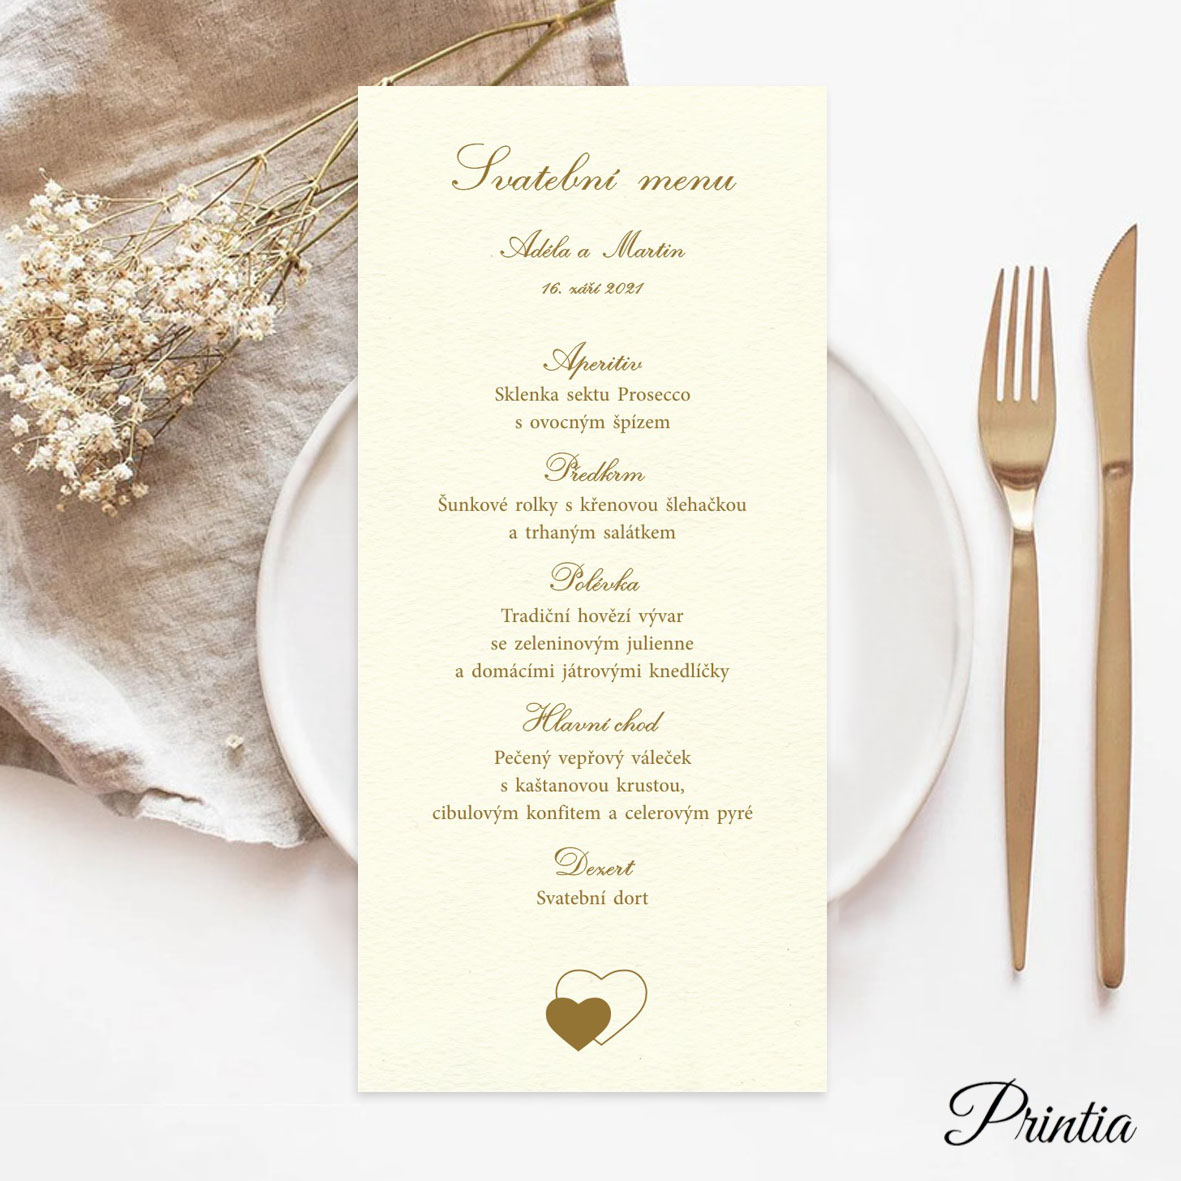 Wedding menu with hearts